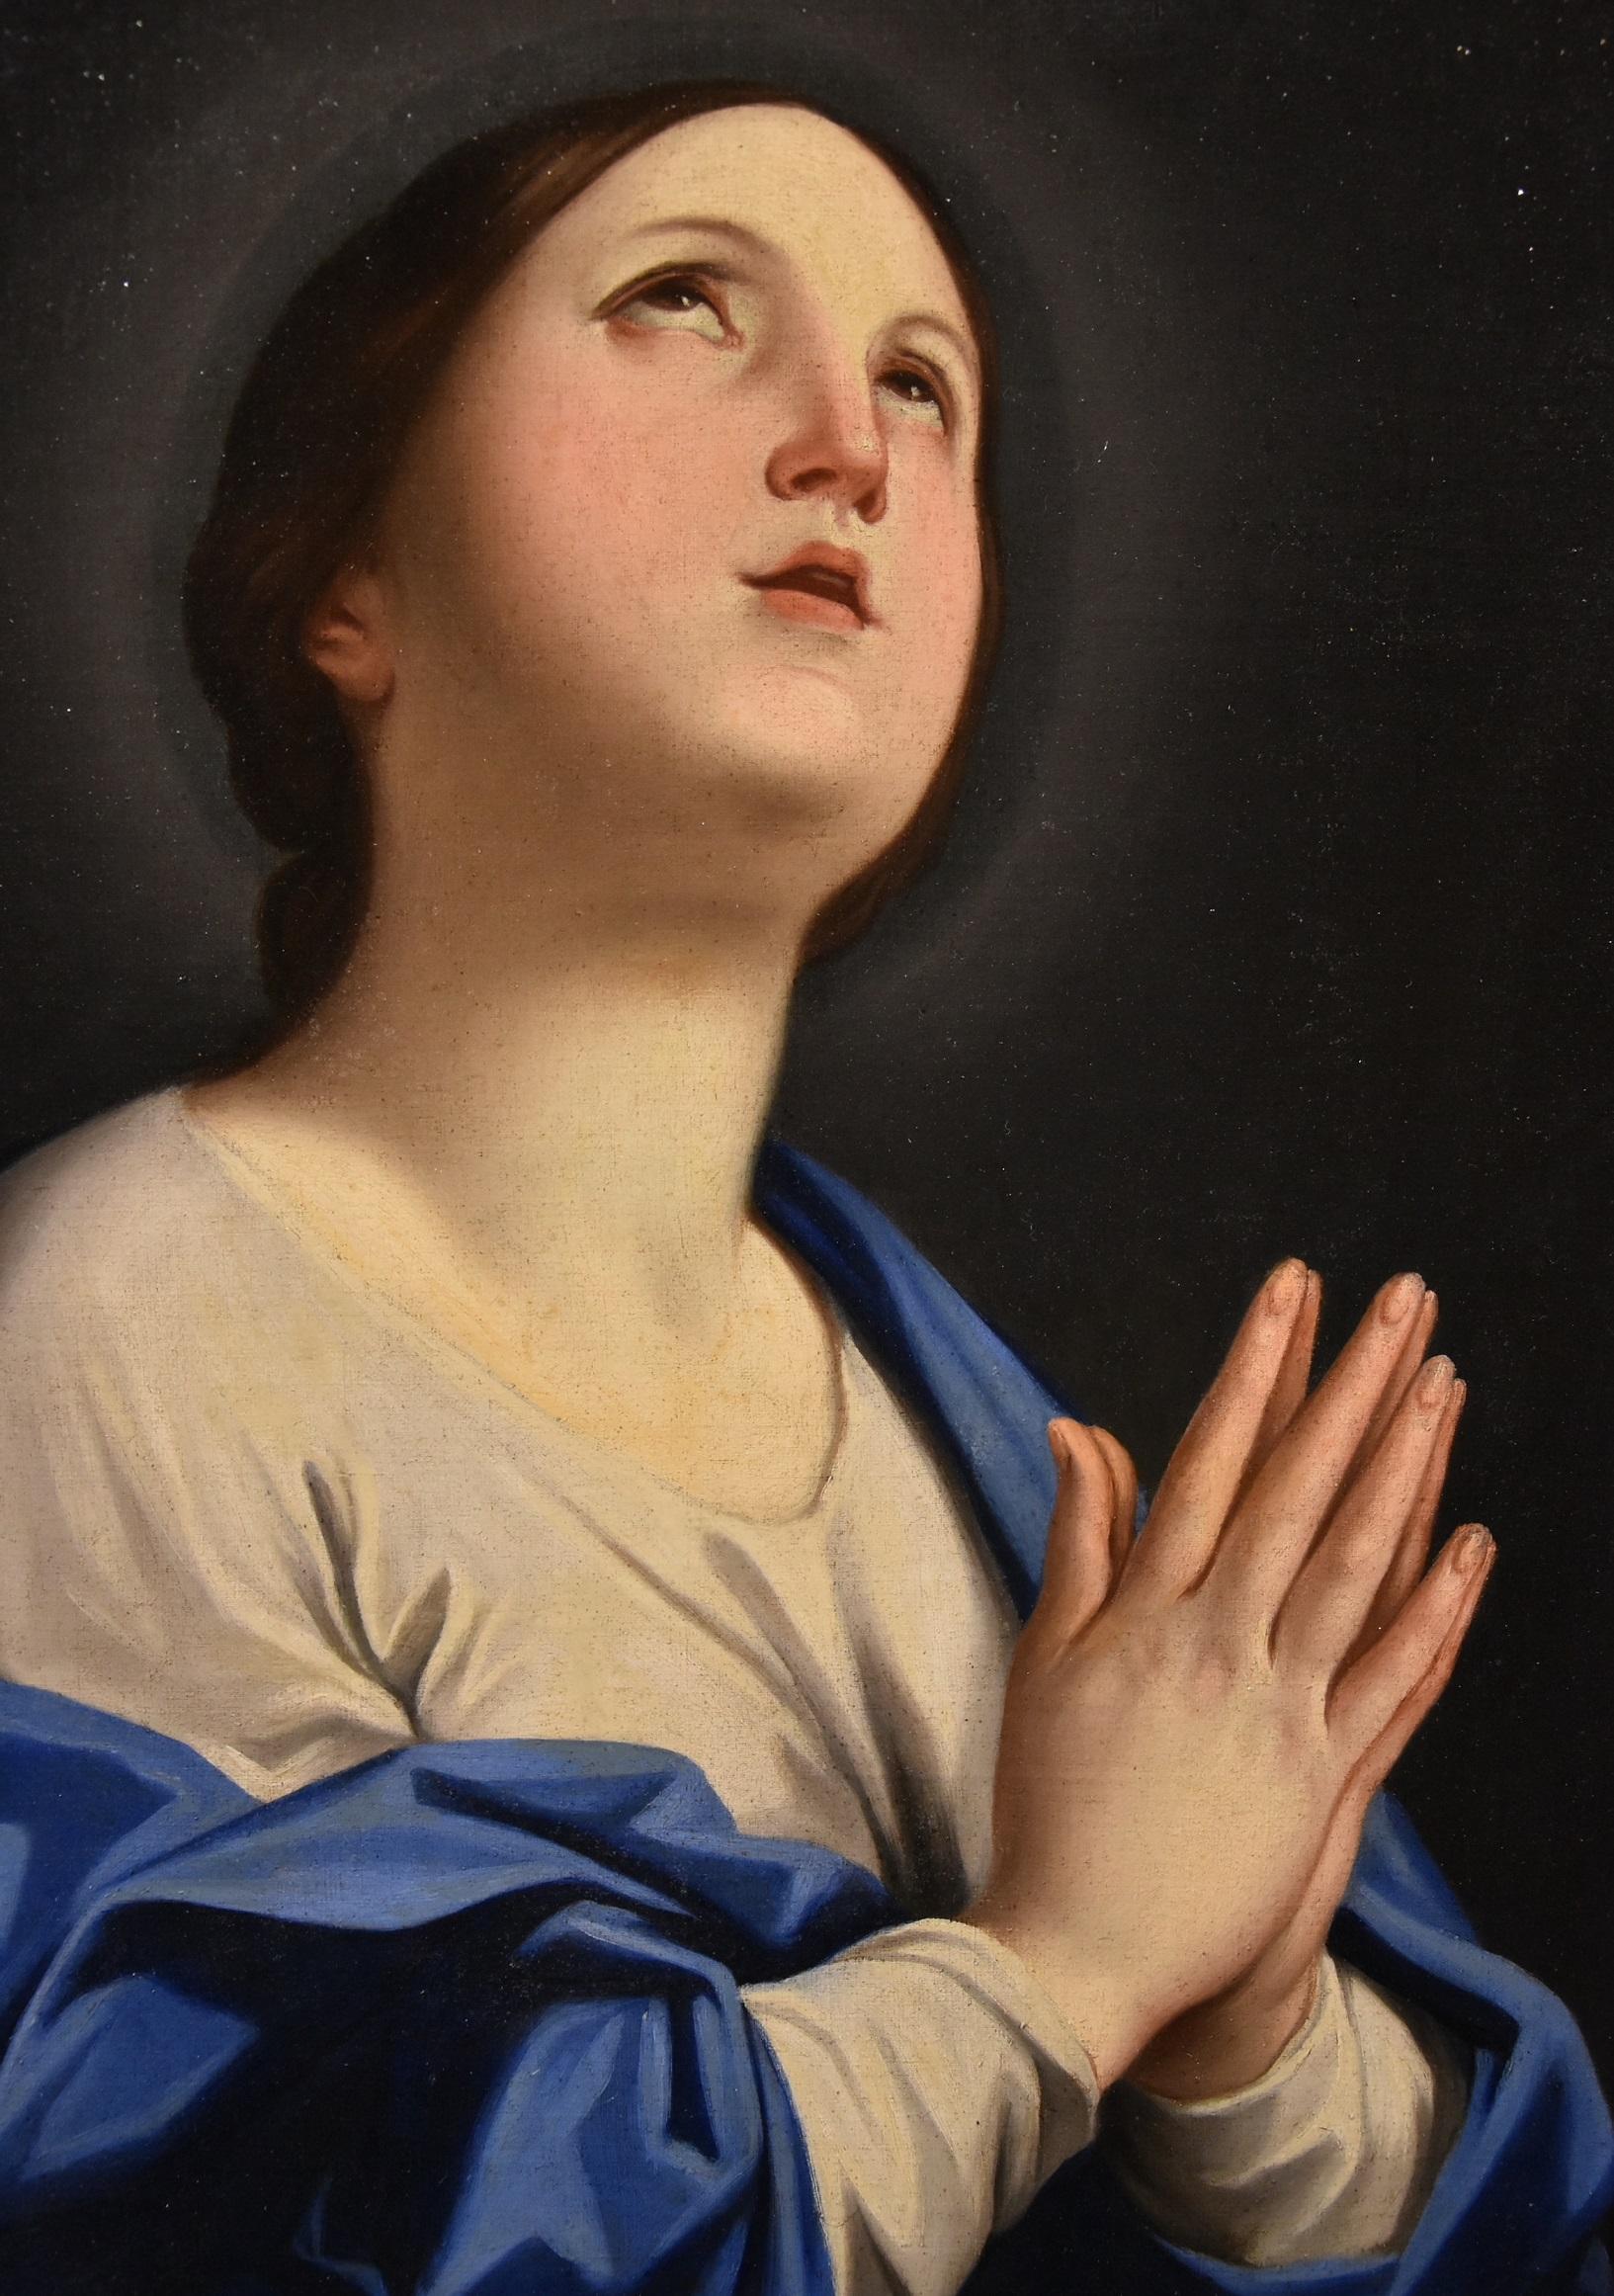 Peintre bolognais du XVIIe siècle - Atelier de Carlo Cignani (Bologne 1628 - Forlì 1719)
Vierge en prière (Madone en prière)

peinture à l'huile sur toile
cm. 69 x 58 - encadré cm. 78 x 67

Il s'agit d'une œuvre de grande valeur, qui présente les